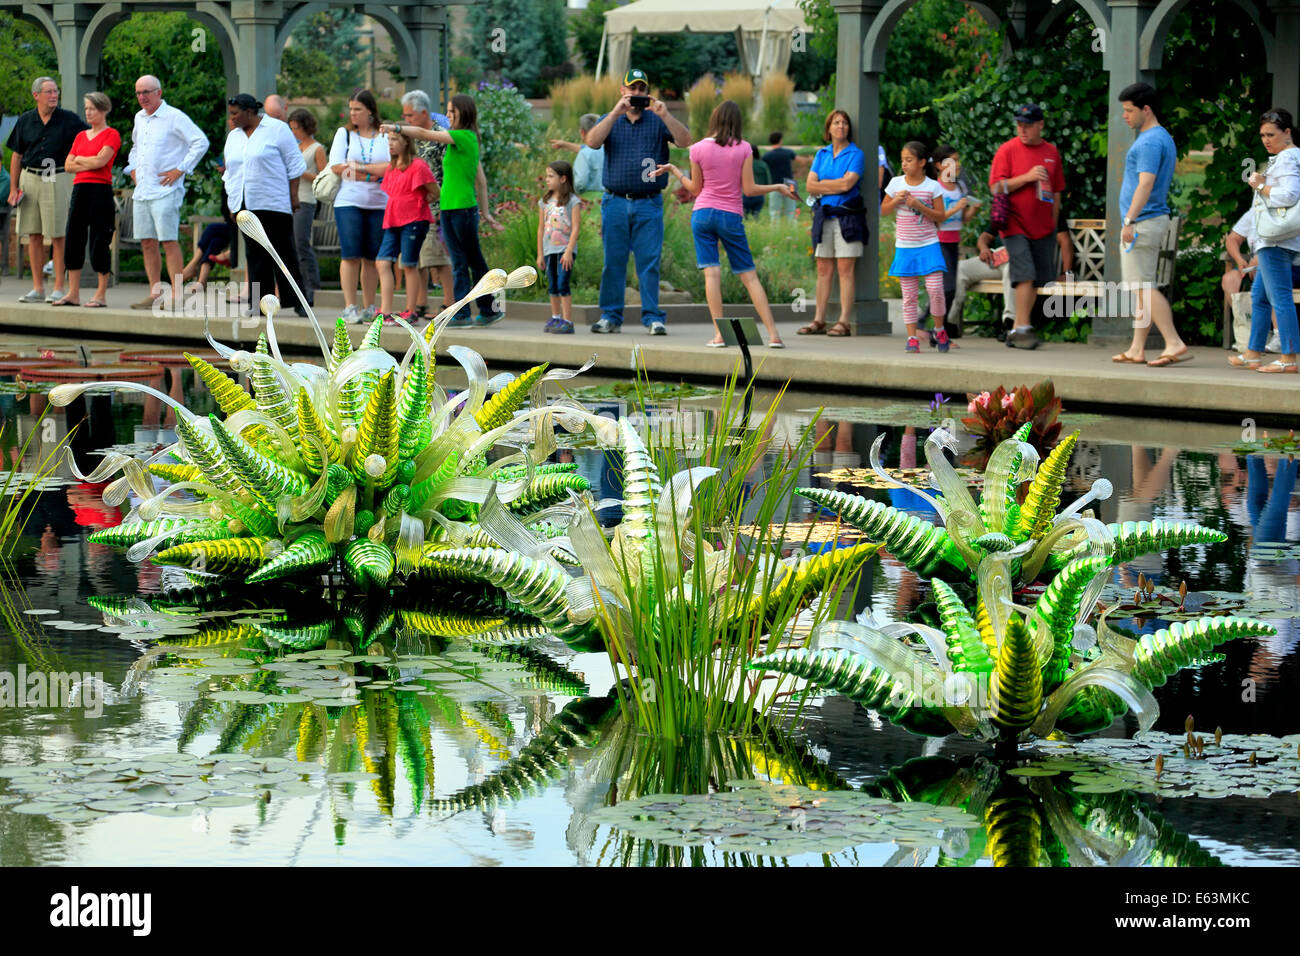 Les gens et les détails de 'Monet' Fiori Piscine, sculpture de verre par Dale Chihuly, Monet Piscine, jardins botaniques de Denver, Denver, Colorado Banque D'Images